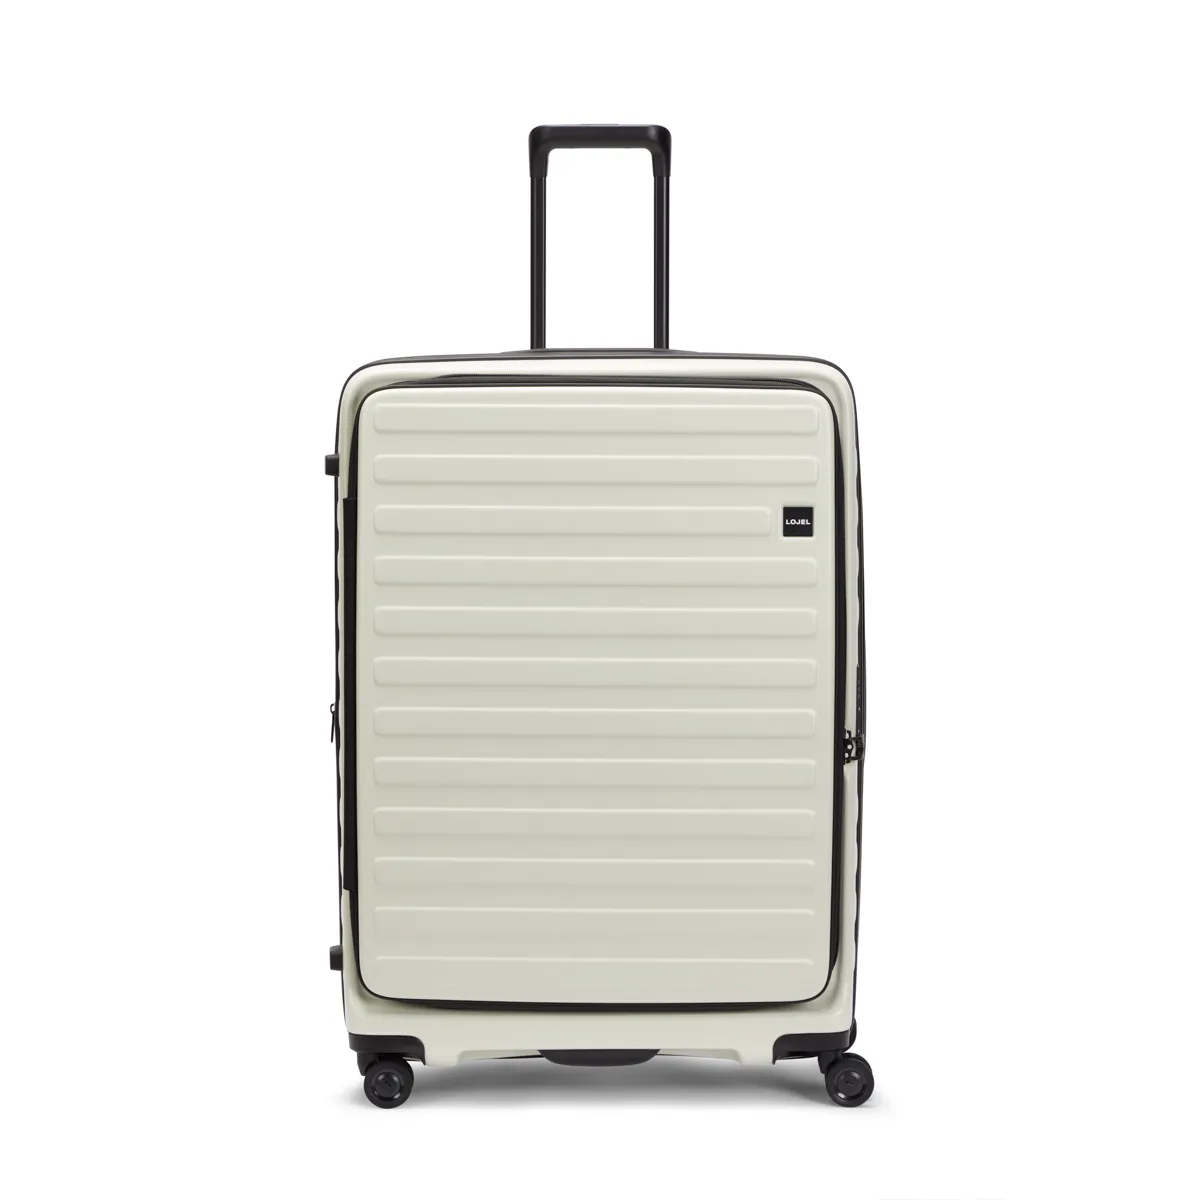 Ziploc®, Suitcase Space Saver